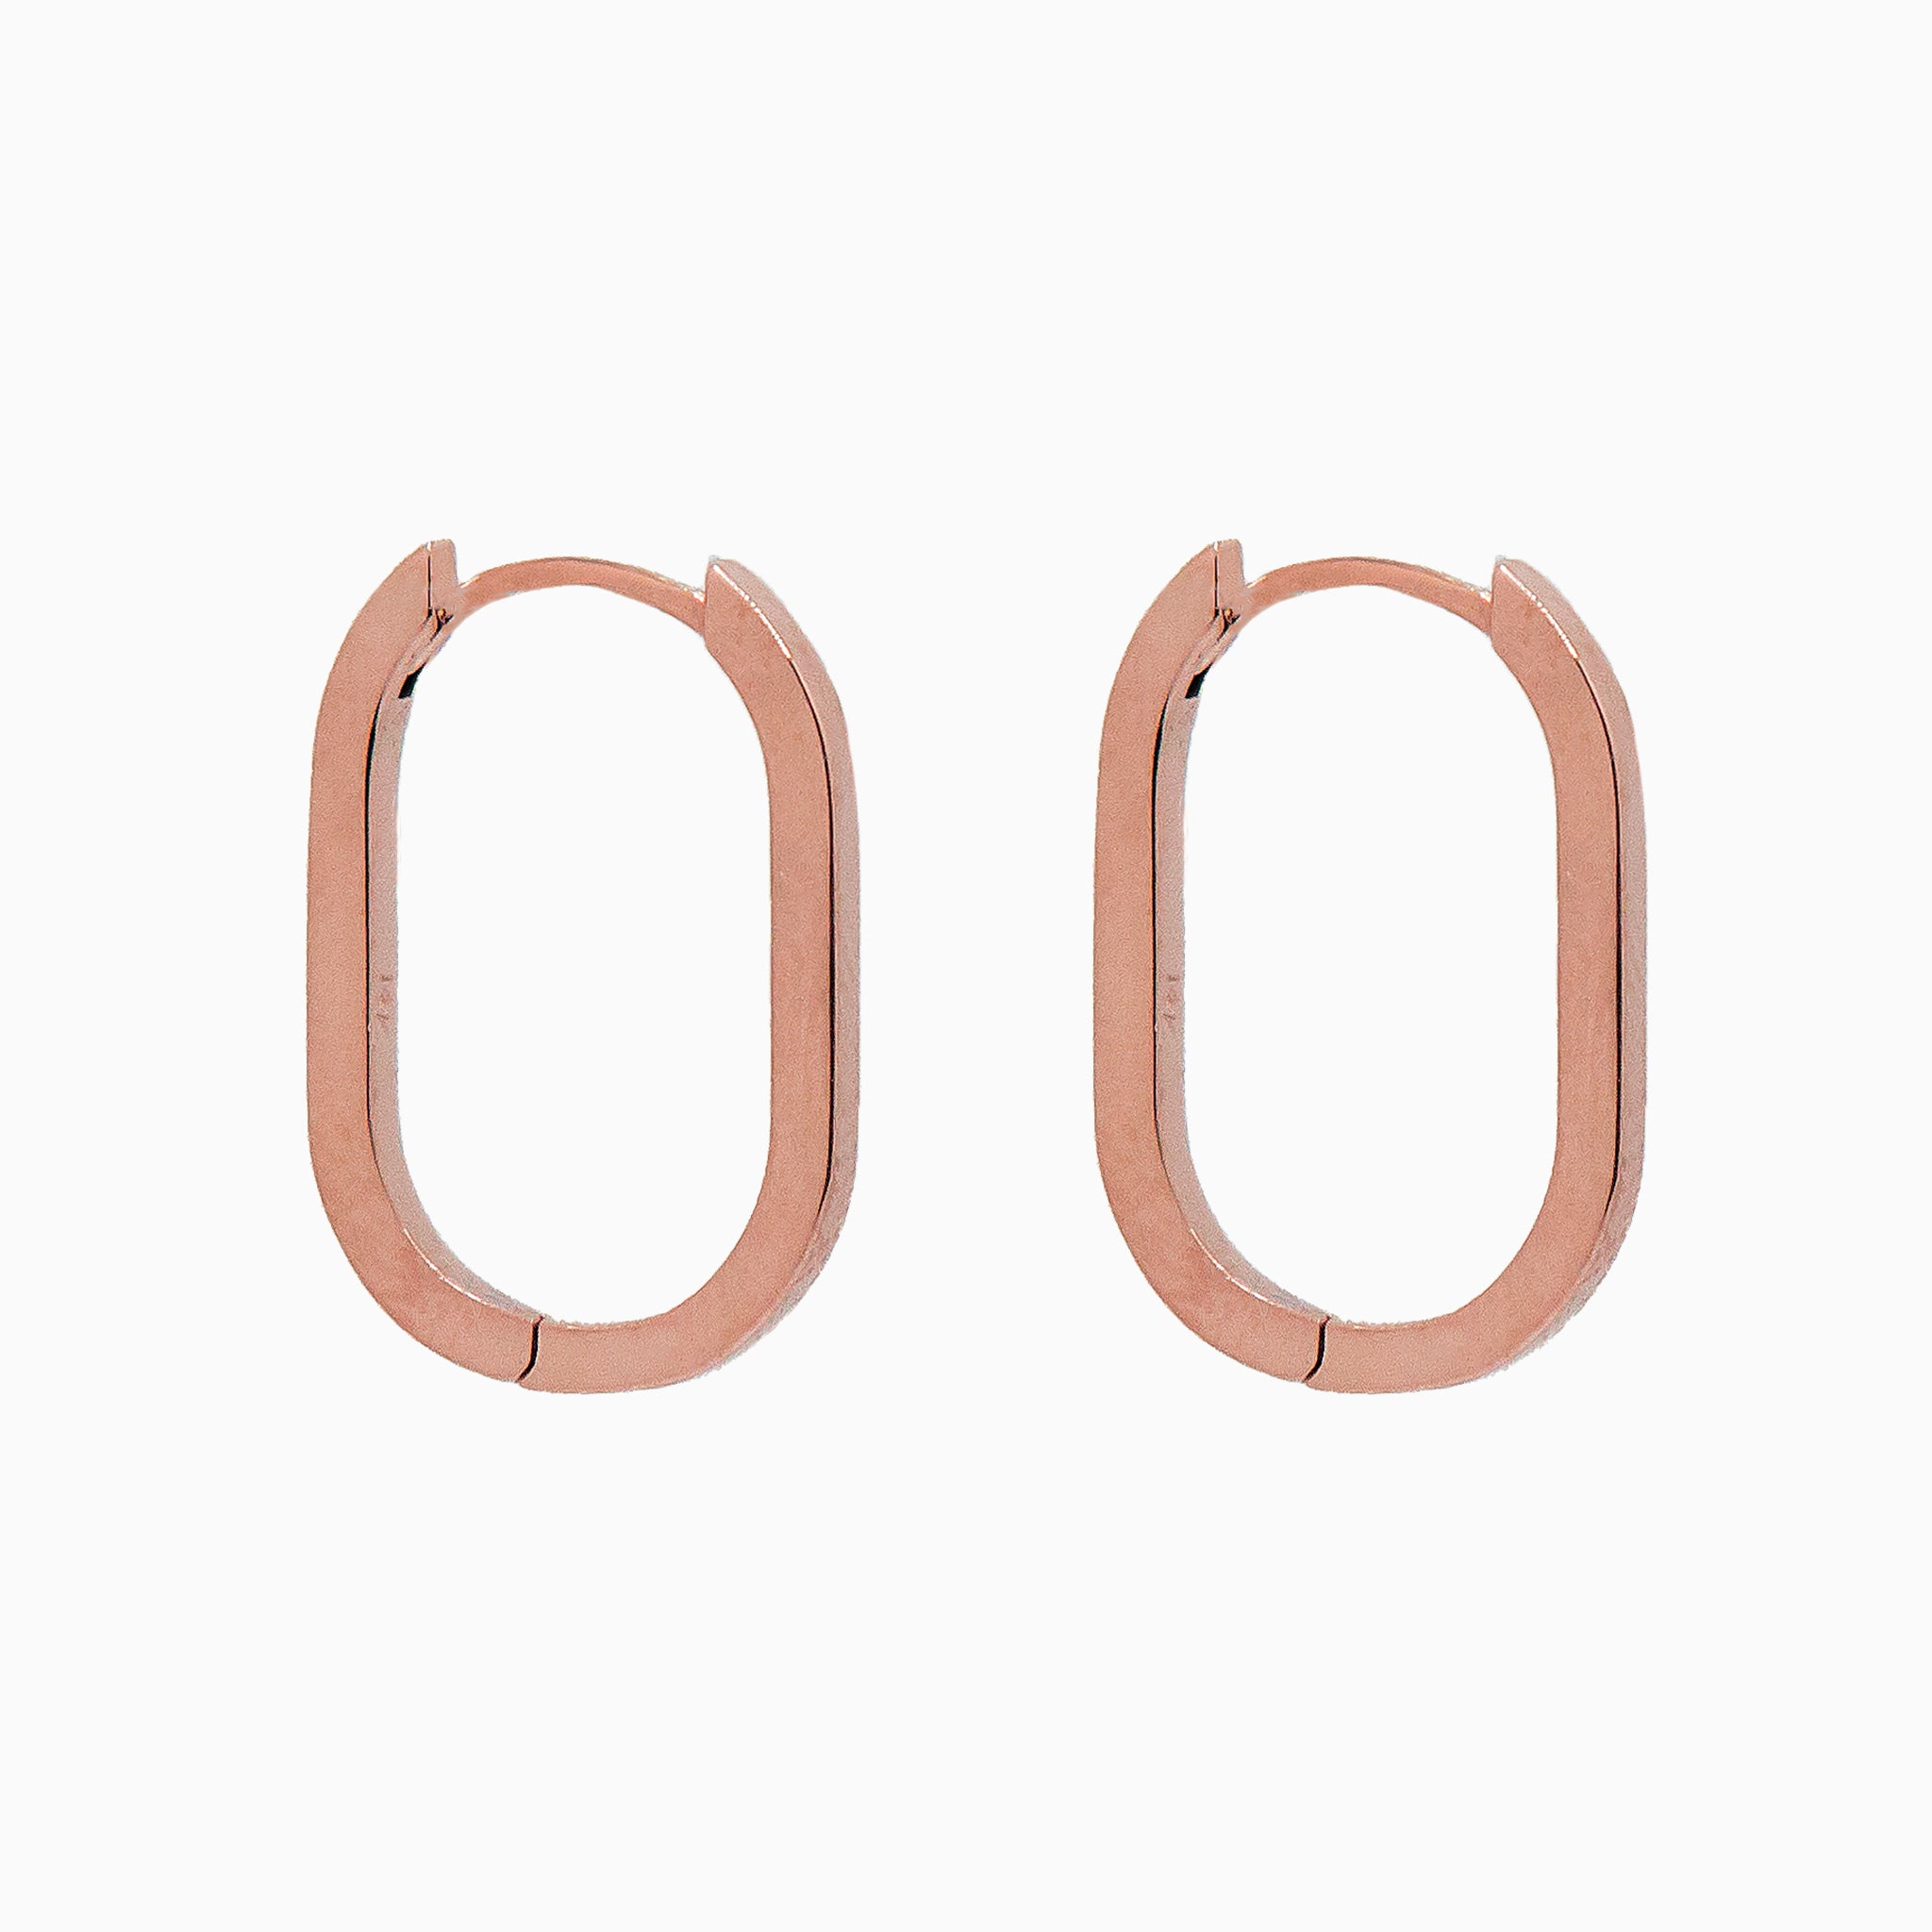 14k Rose Gold 19mm x 13mm Hinged Paperclip Hoop Earrings, Side View